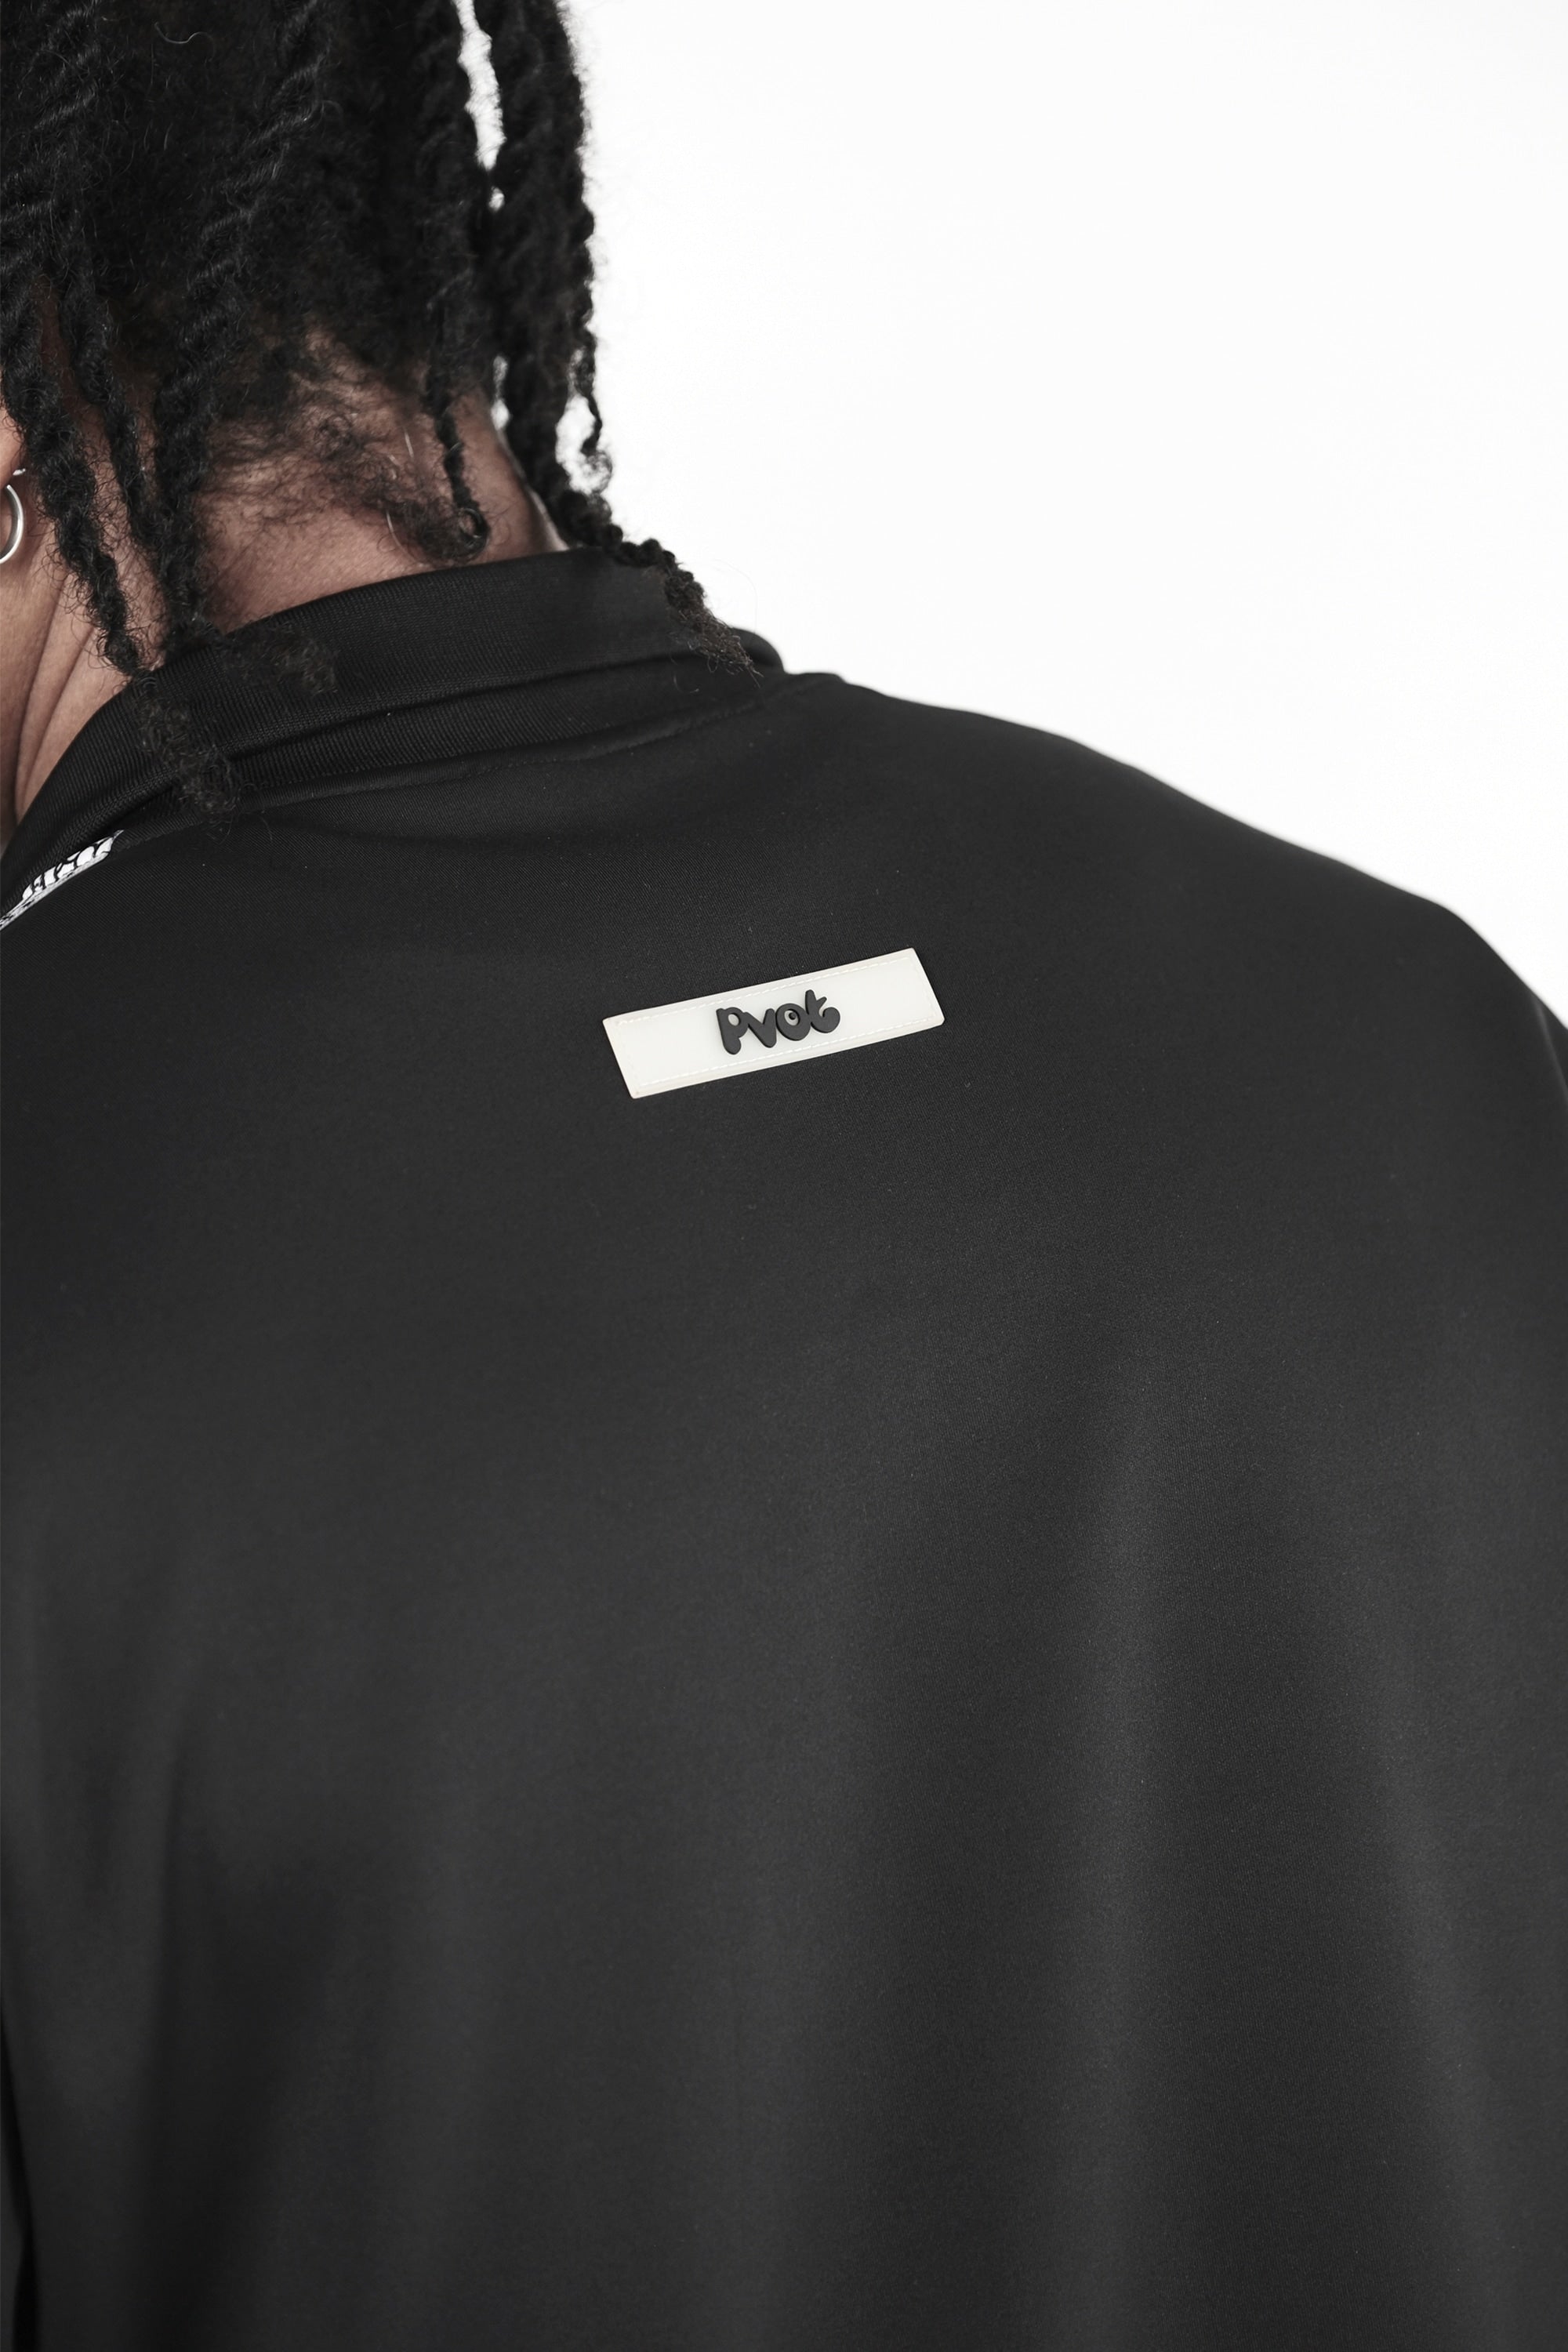 Pvot "01" Jersey Track Jacket (Black)